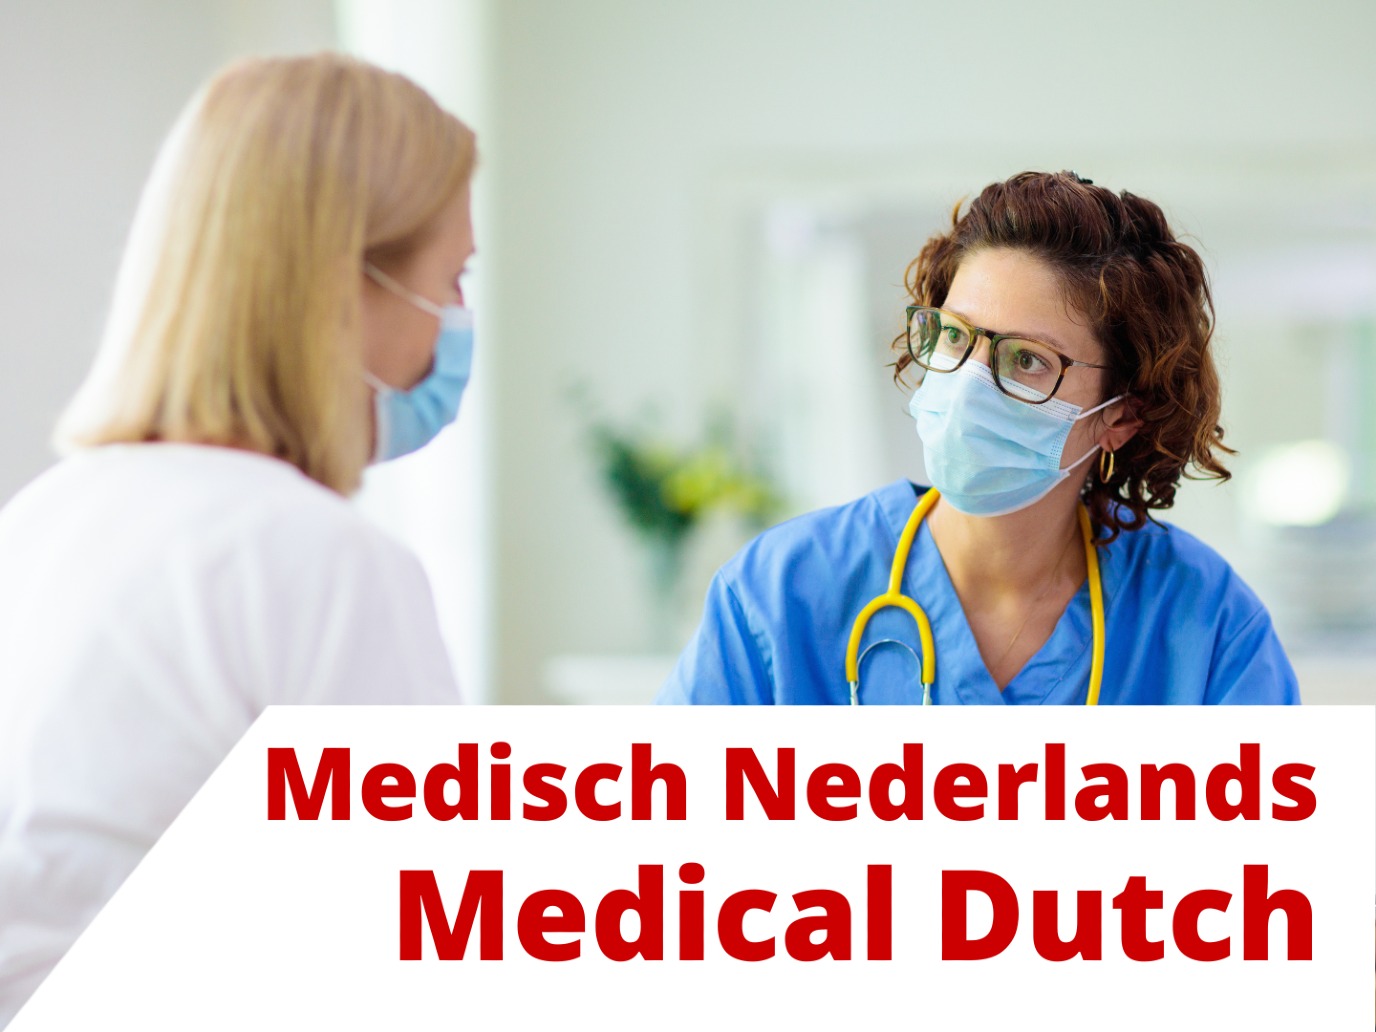 Medical Dutch